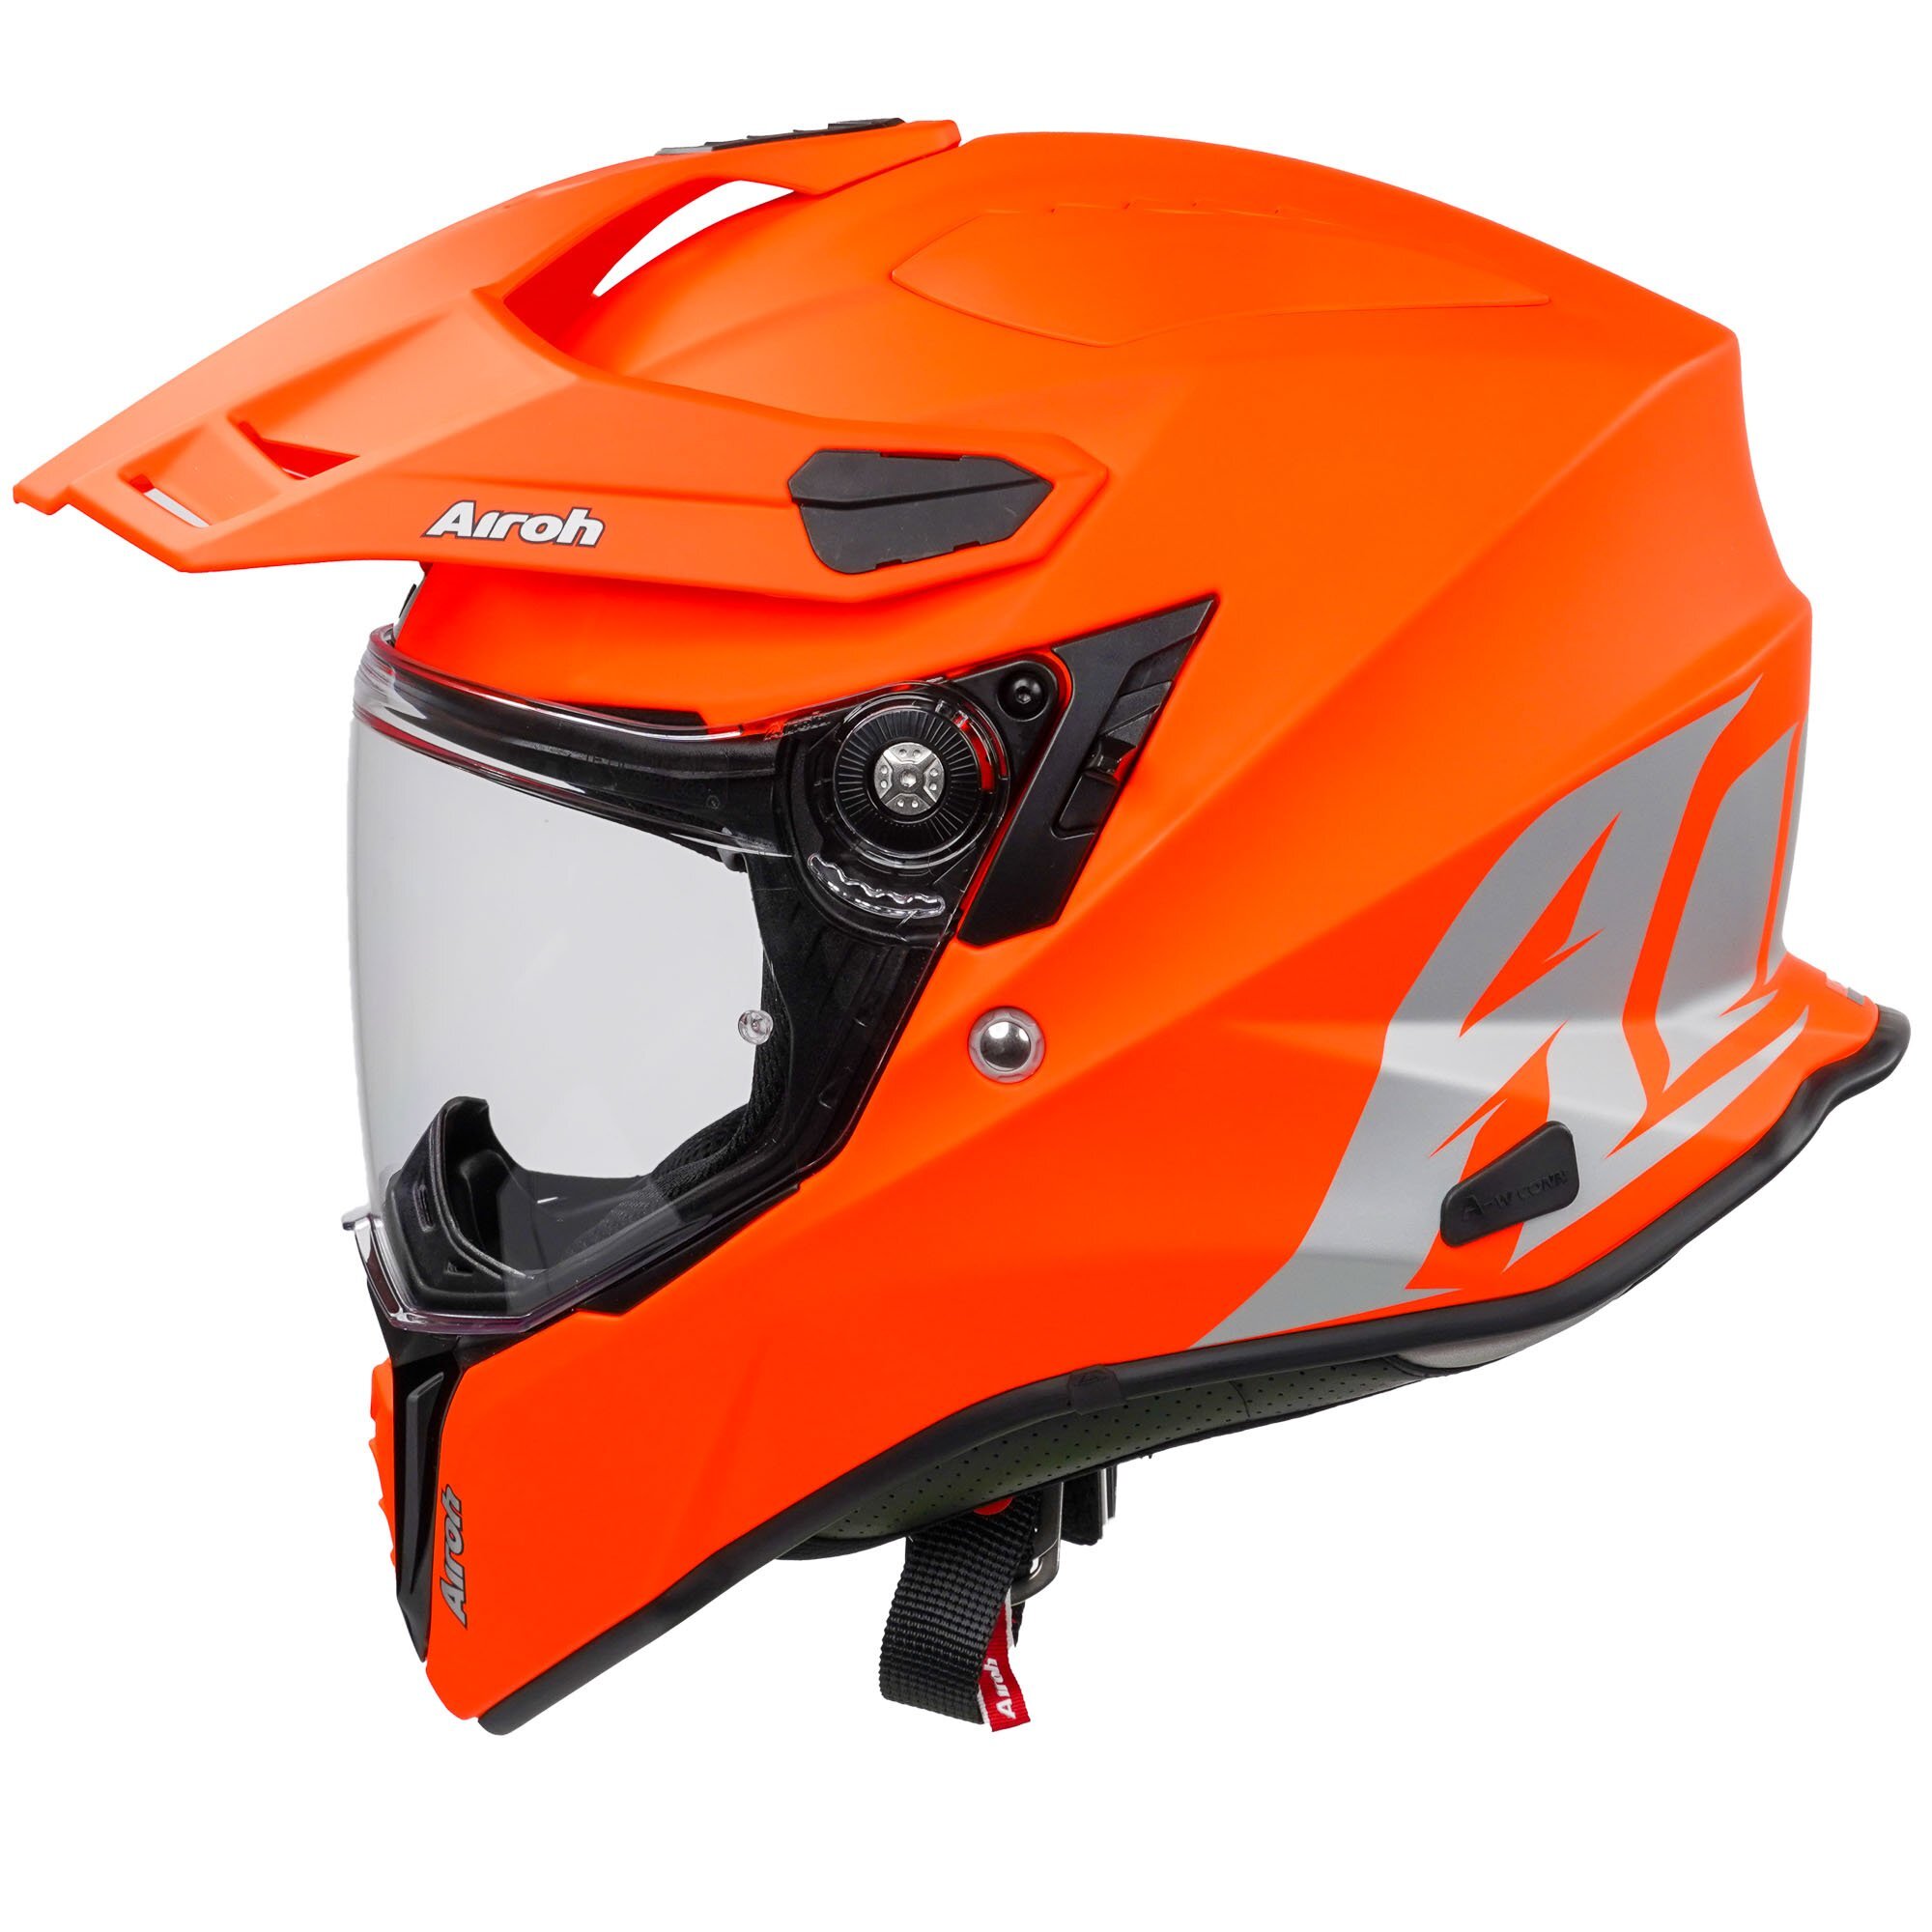 AIROH Commander Adventure - Orange Fluo Matt 2020 :: £314.95